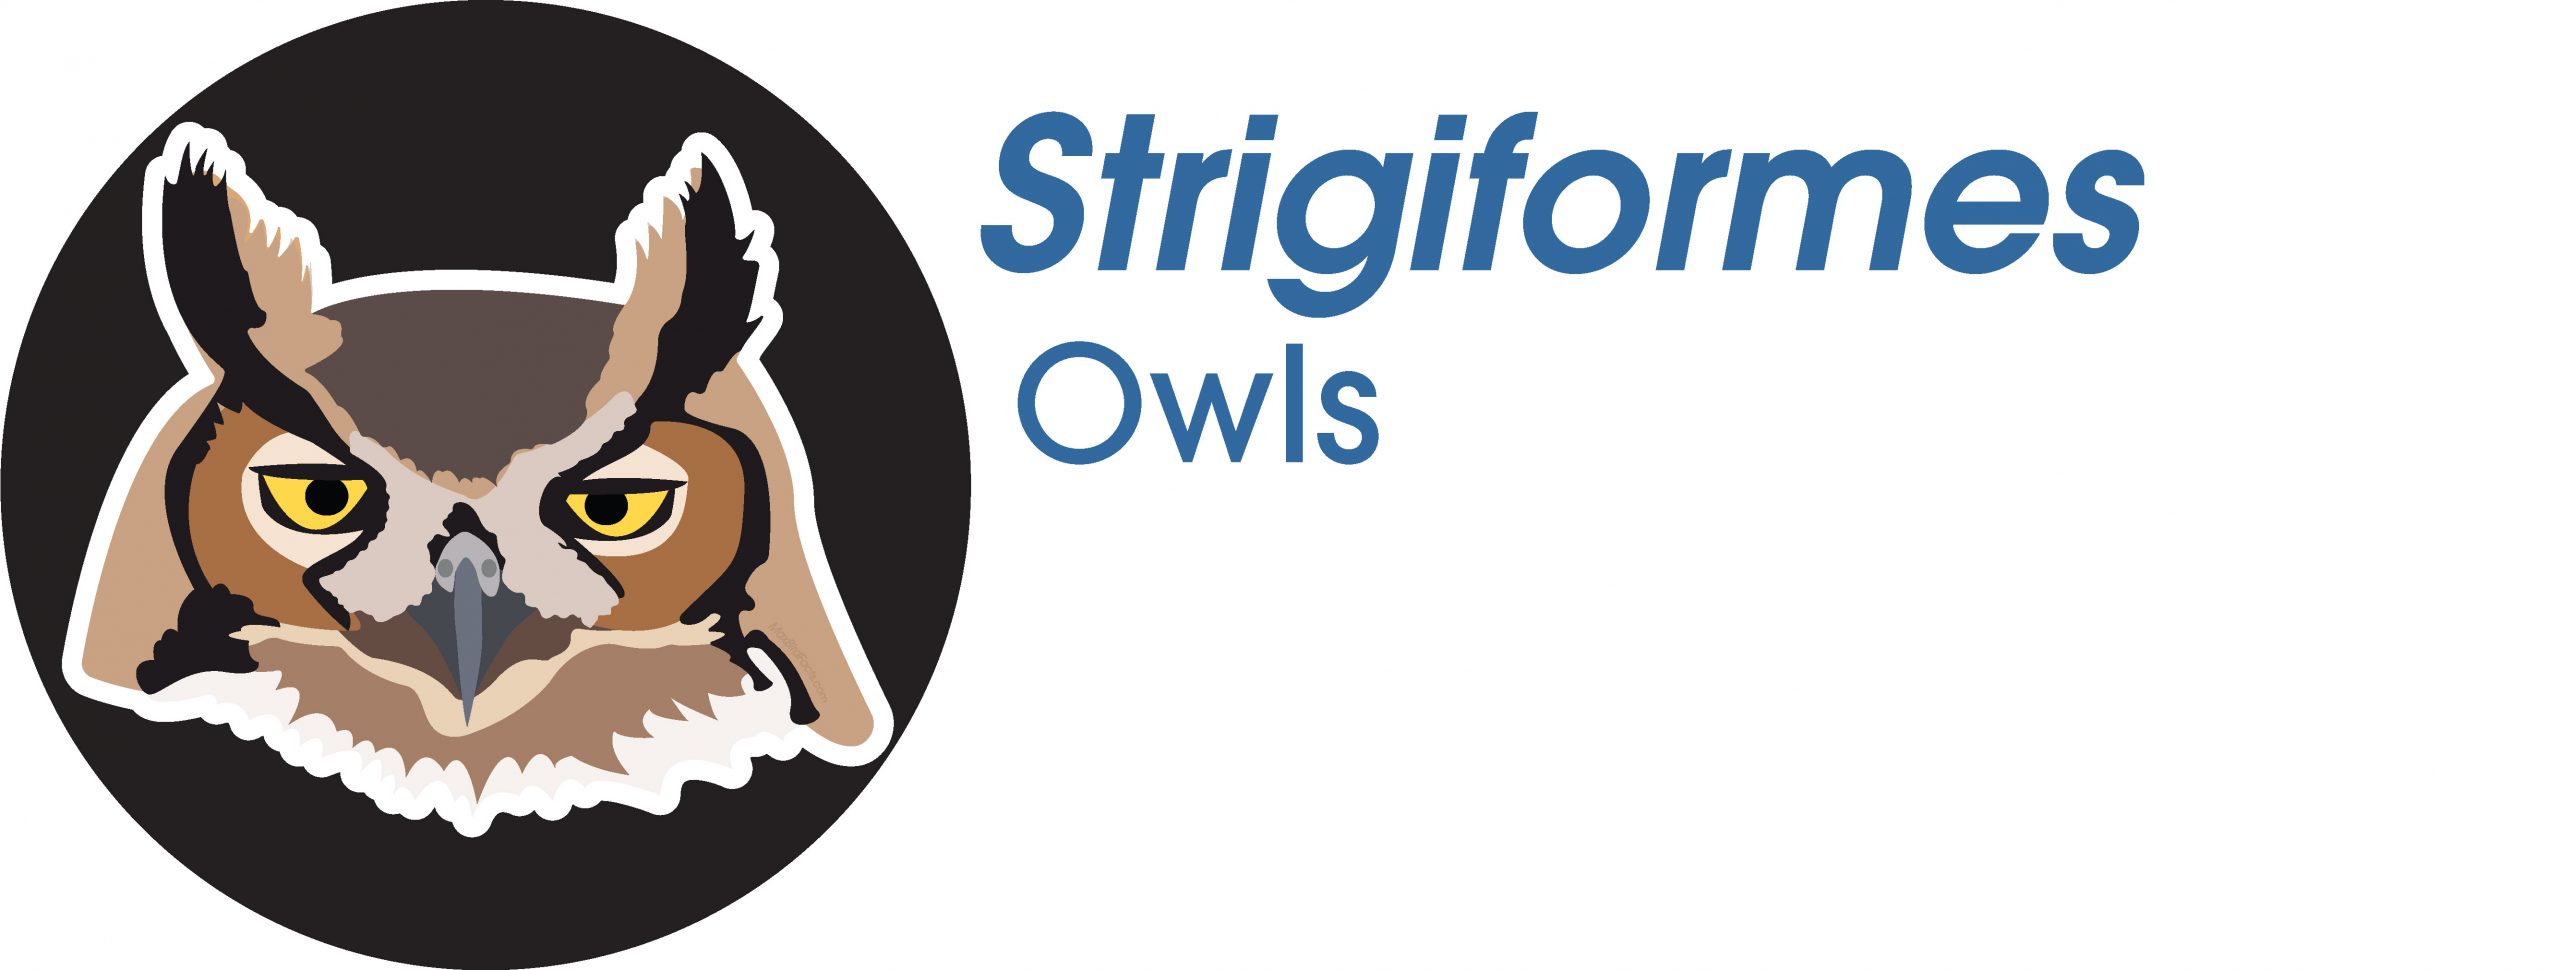 Strigiformes
Owls
Great Horned Owl